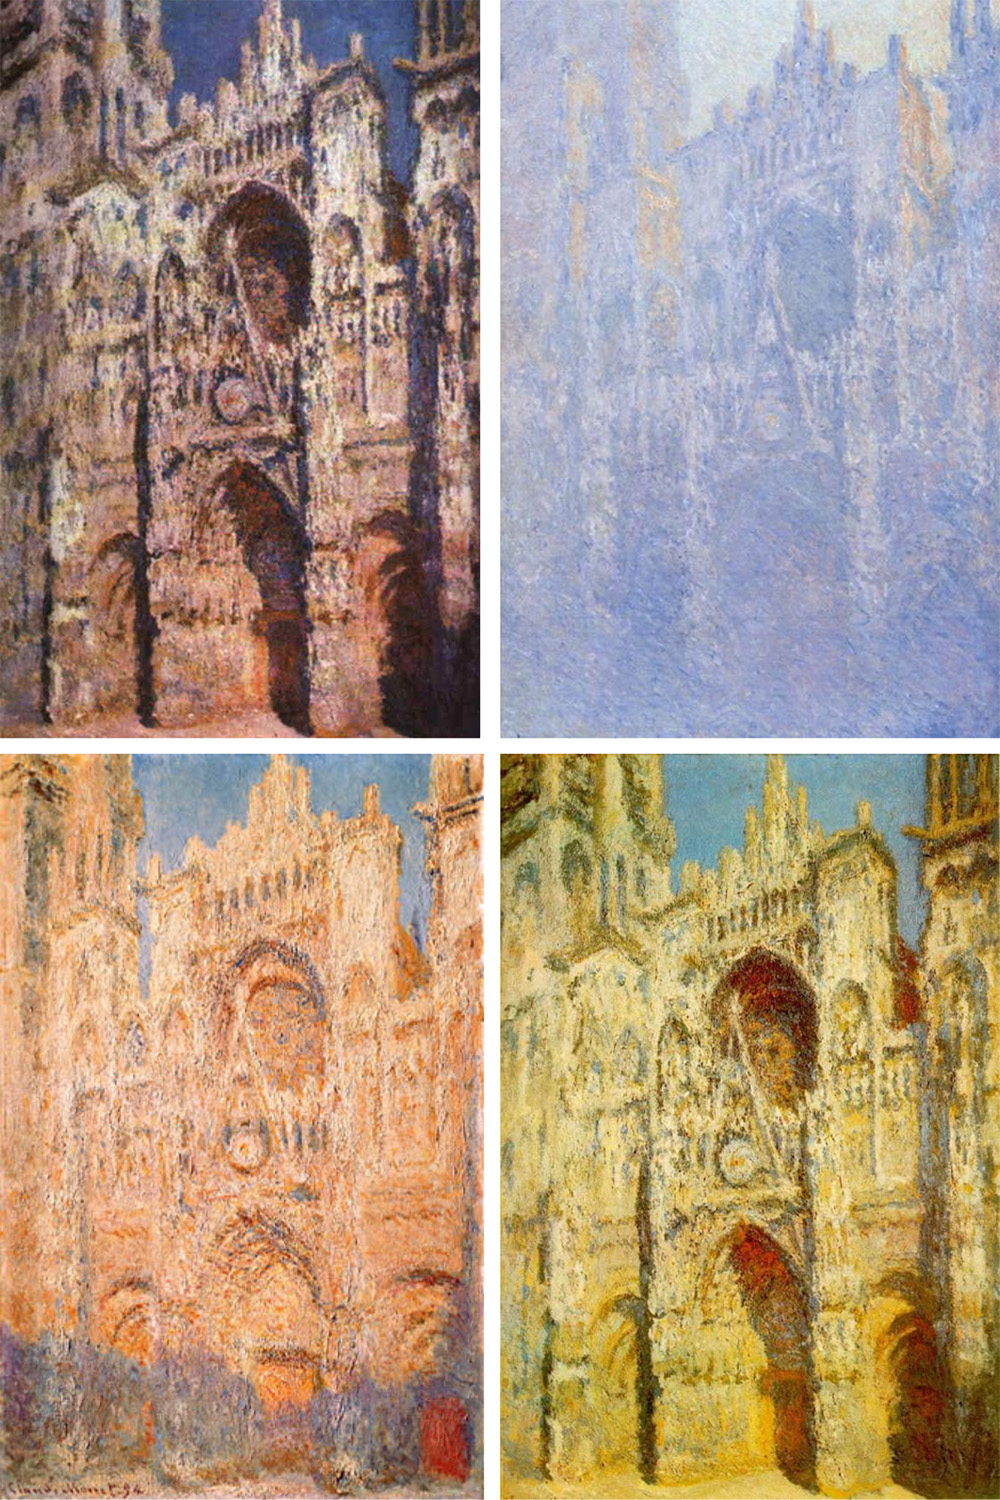 Cuatro ejemplos de la extensa serie de pinturas que Claude Monet realizó documentando los cambios que provocaba la luz en distintos momentos en la catedral de Rouen. 